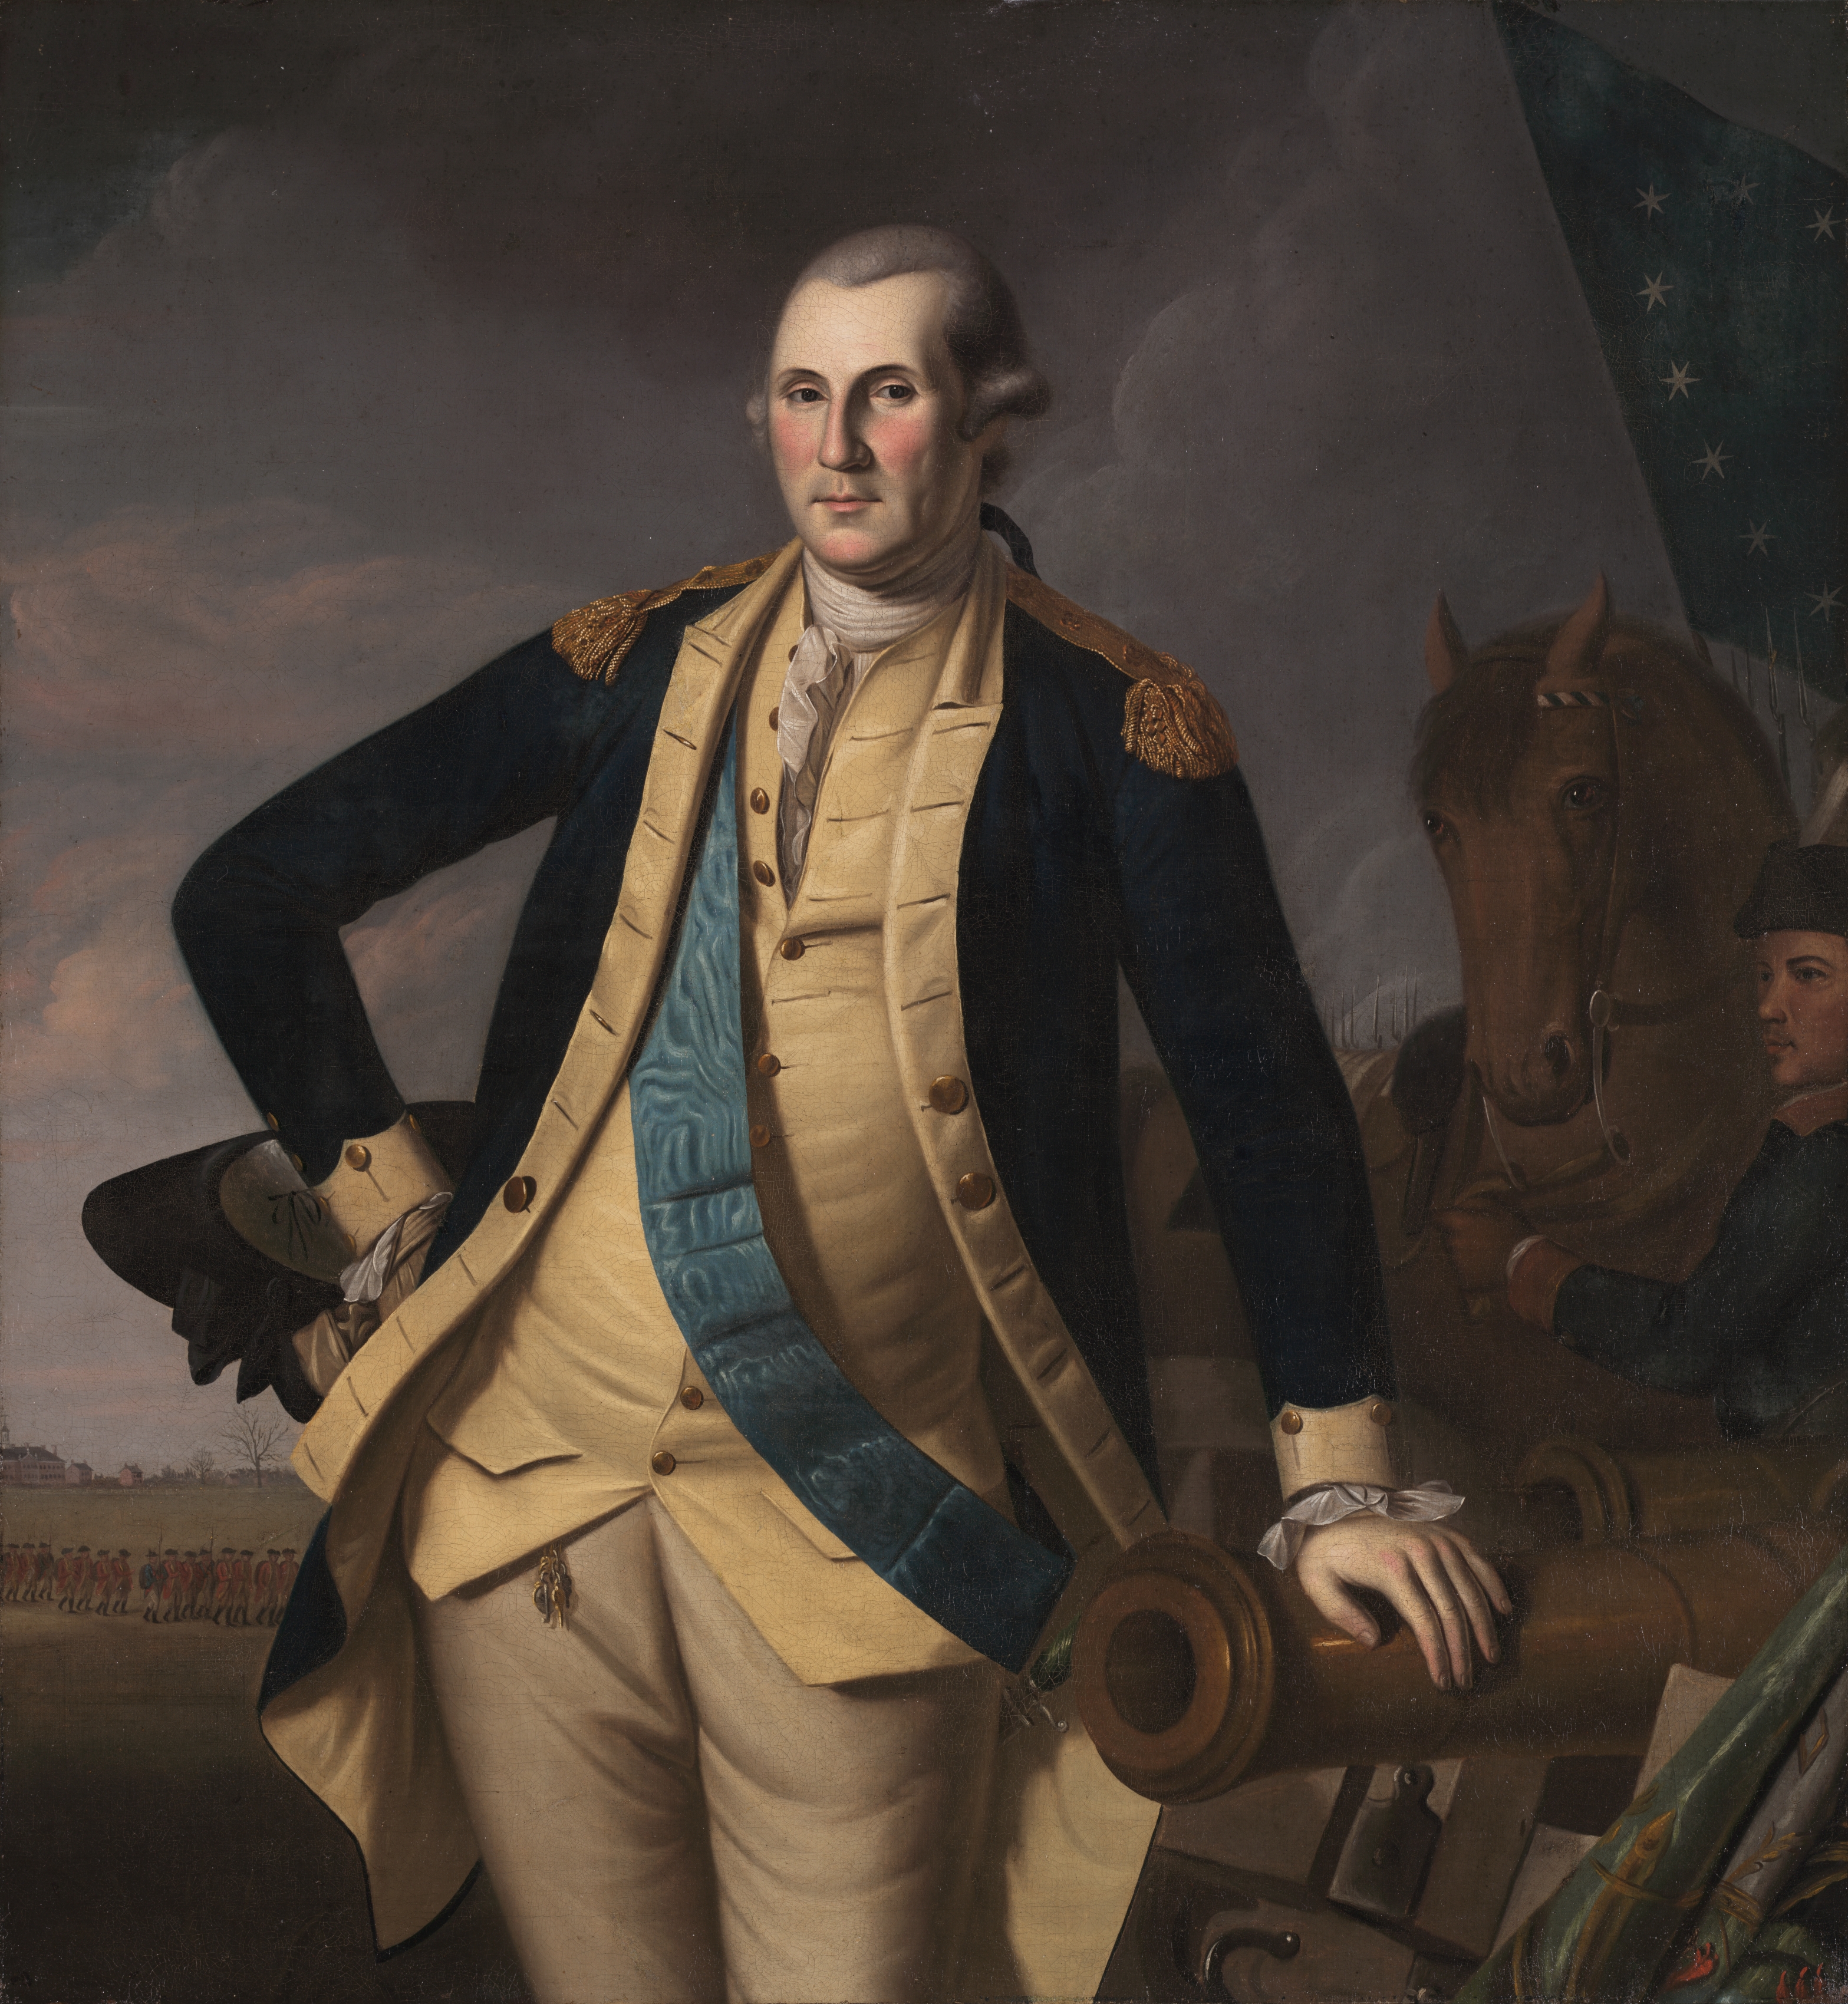 George Washington at Princeton